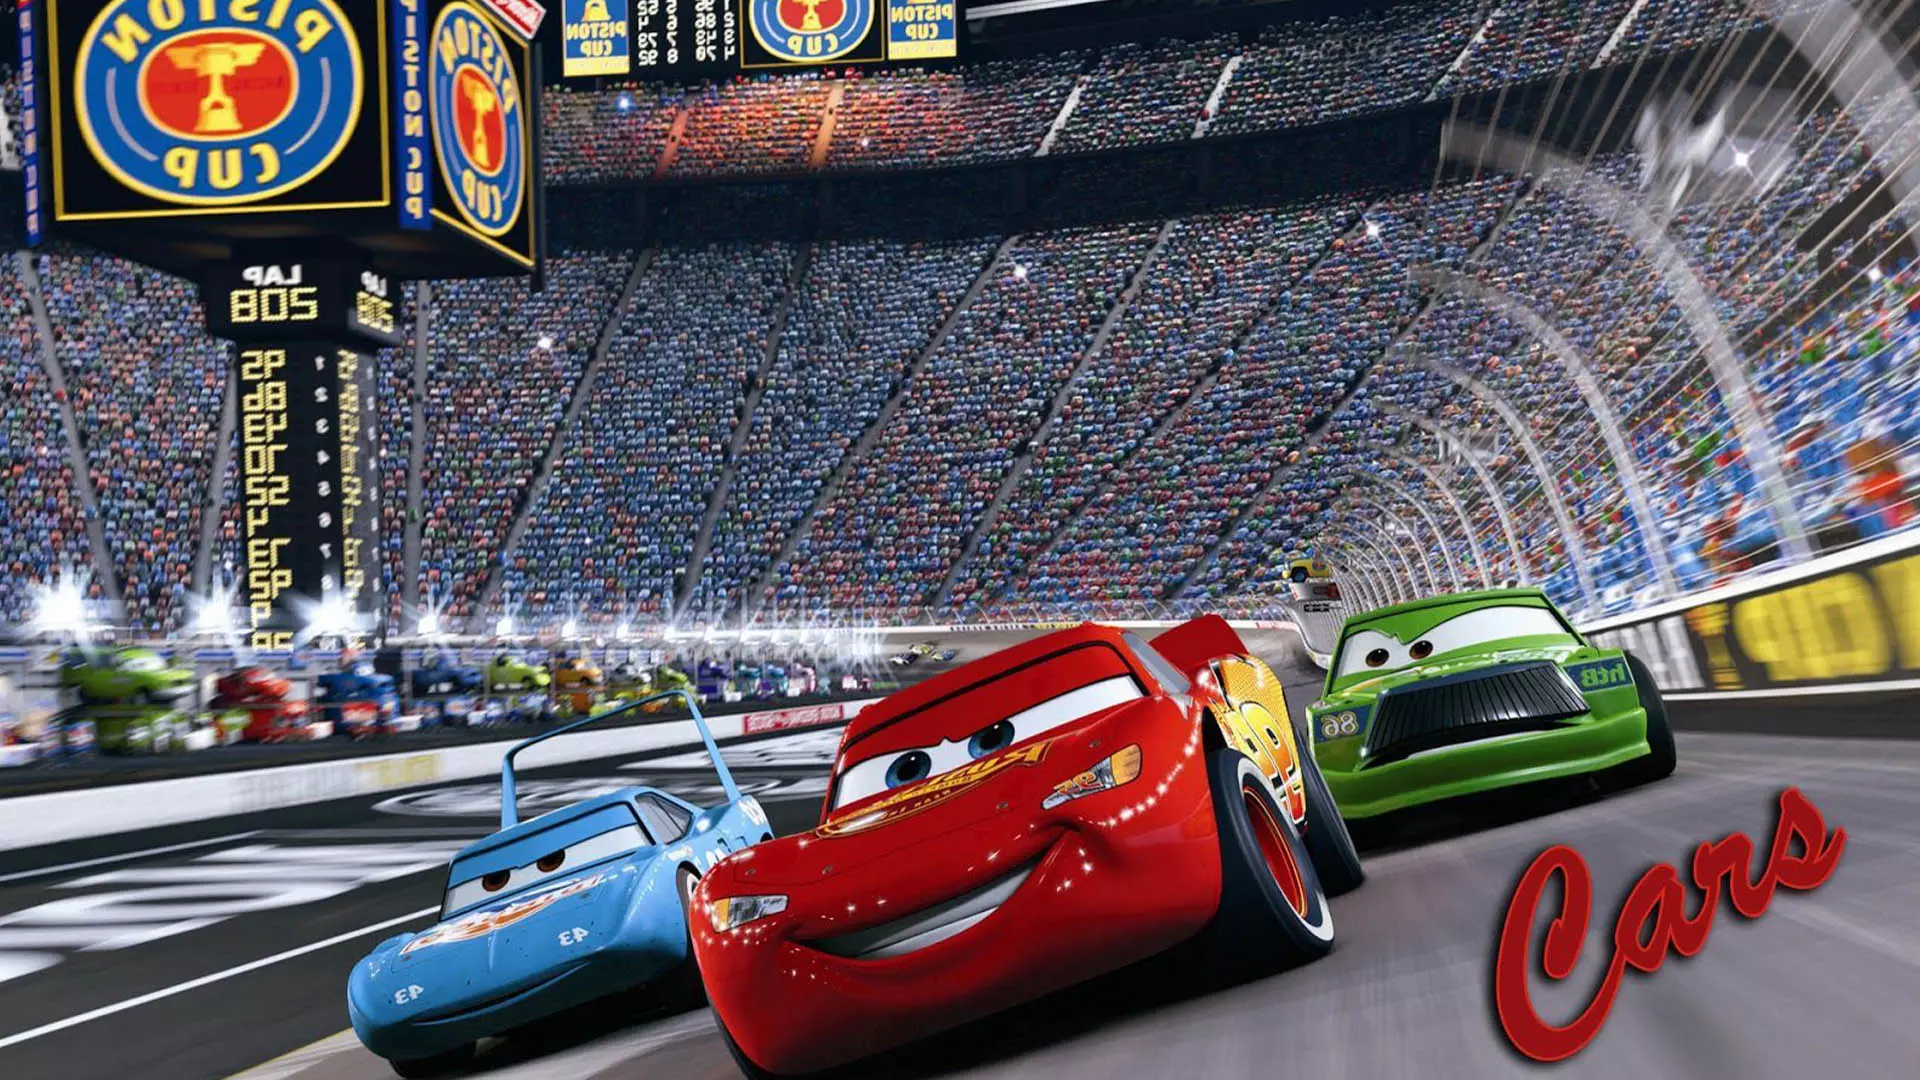 شخصیت های مک کوئین ، کینگ و چیک هیکس در حال مسابقه دادن در انیمیشن Cars